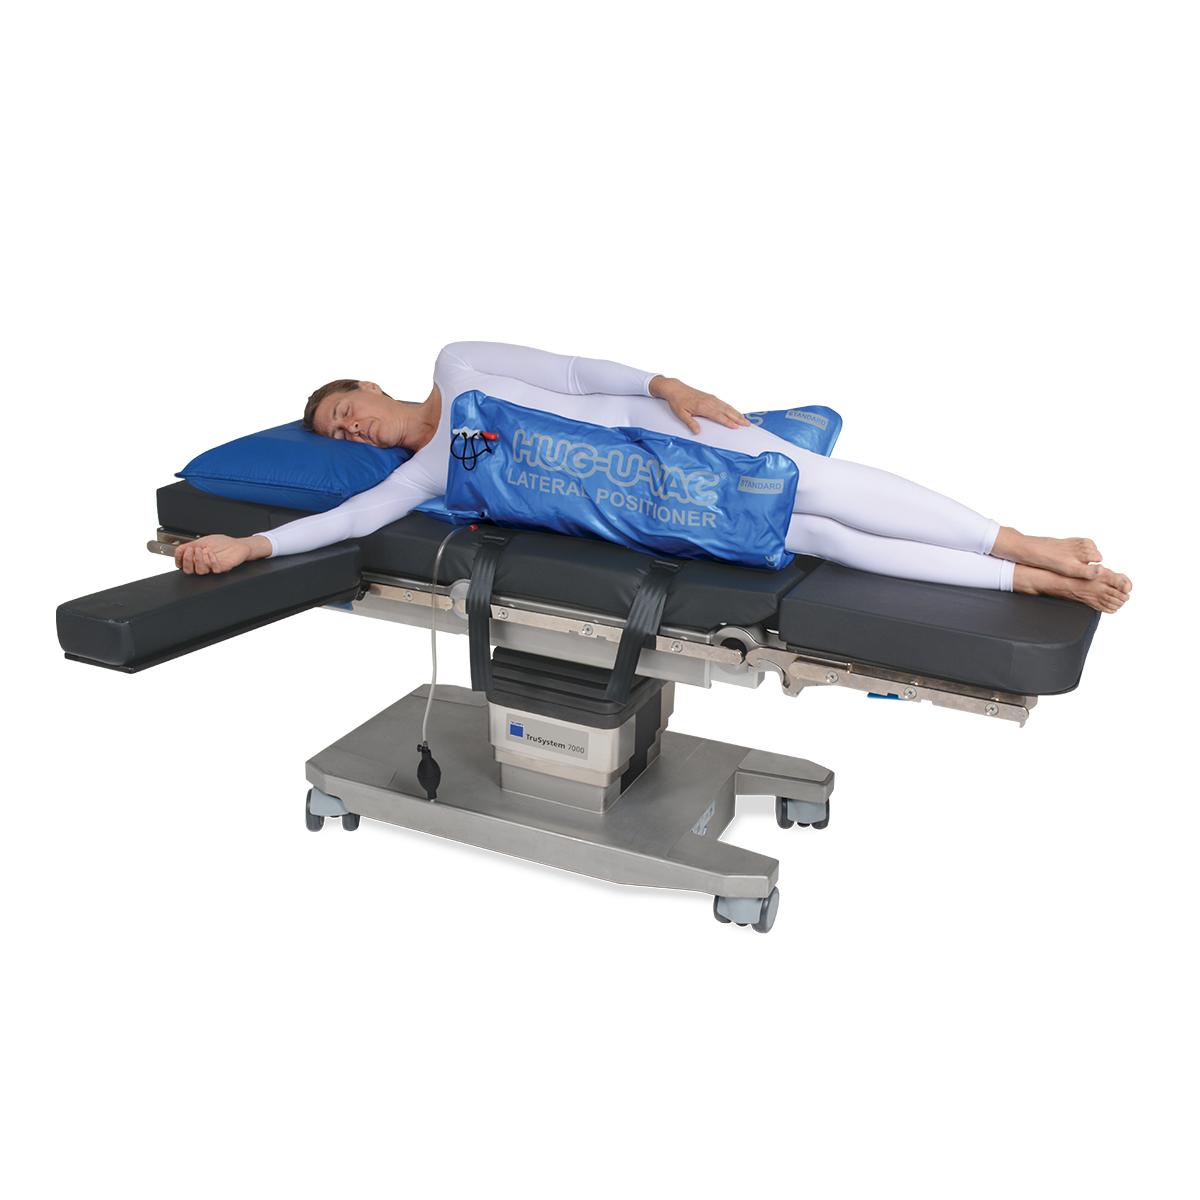 Allen® Hug-U-Vac® Lateral Positioner avec patient en position latérale